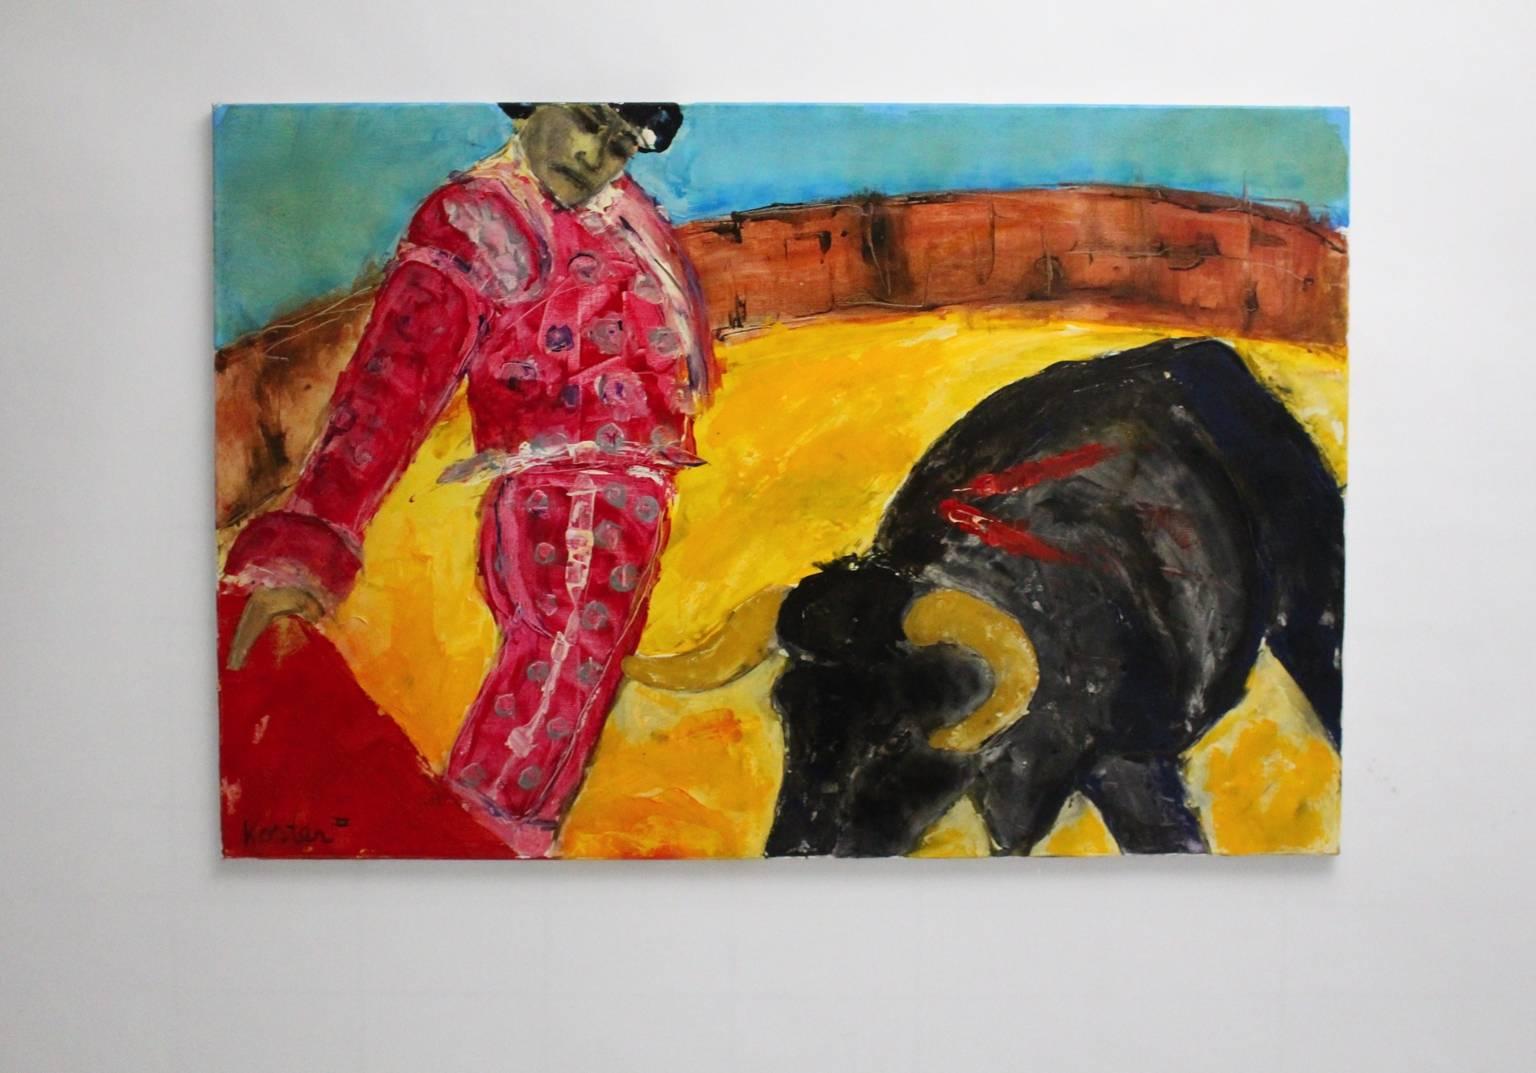 Peinture à l'huile moderne multicolore des années 1980 par Koster.
Le motif montre un torero espagnol et un taureau dans l'arène.
très bon état
mesures approximatives :
Largeur 150 cm
Hauteur 100 cm
Profondeur 2,5 cm